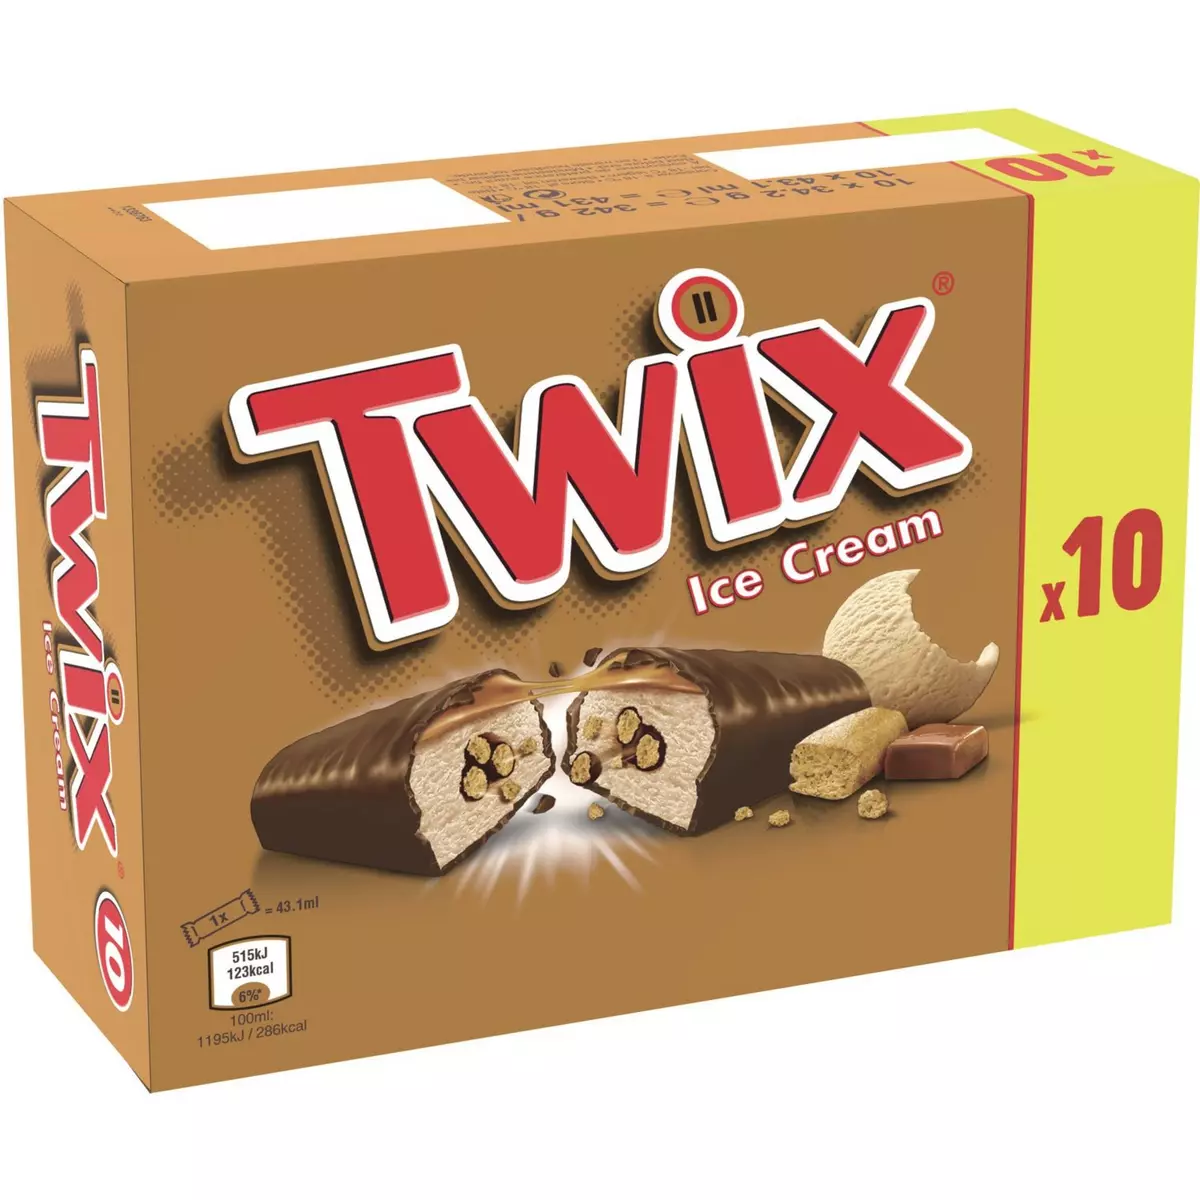 TWIX Barre glacée au caramel, biscuit et enrobage cacao 10 pièces 342g